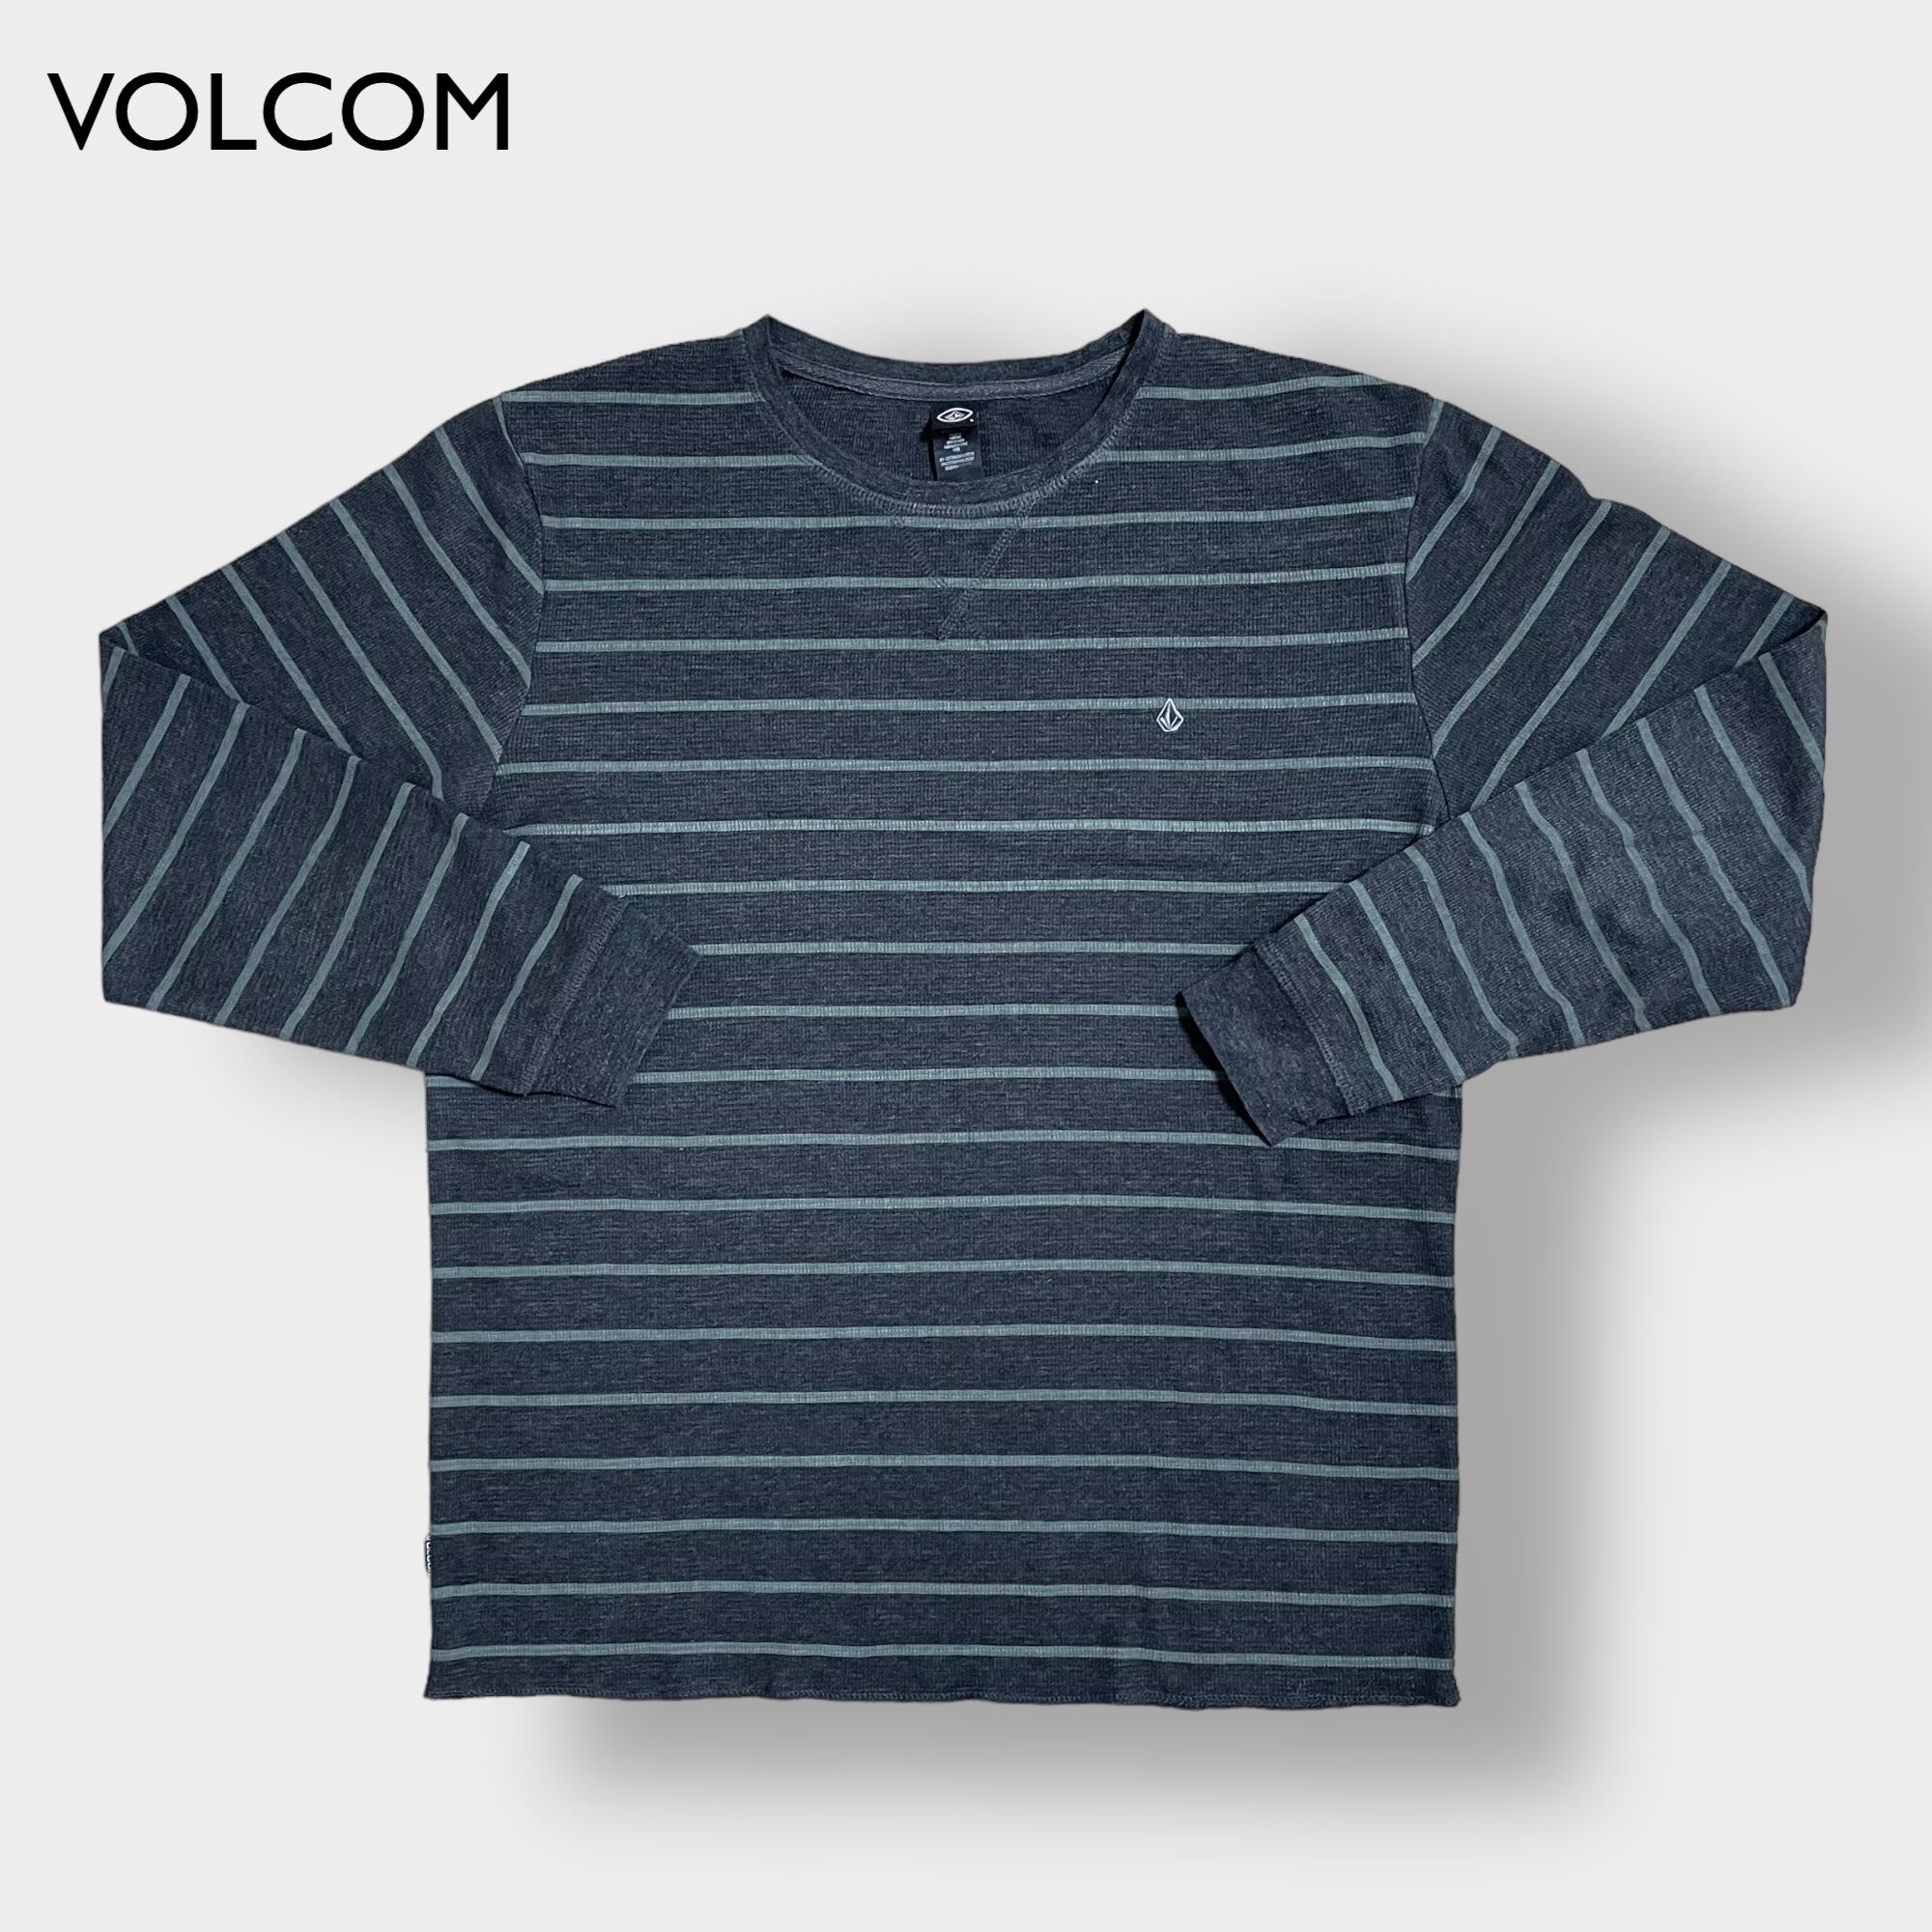 【VOLCOM】ワンポイント 刺繍ロゴ サーマルシャツ ボーダー 長袖